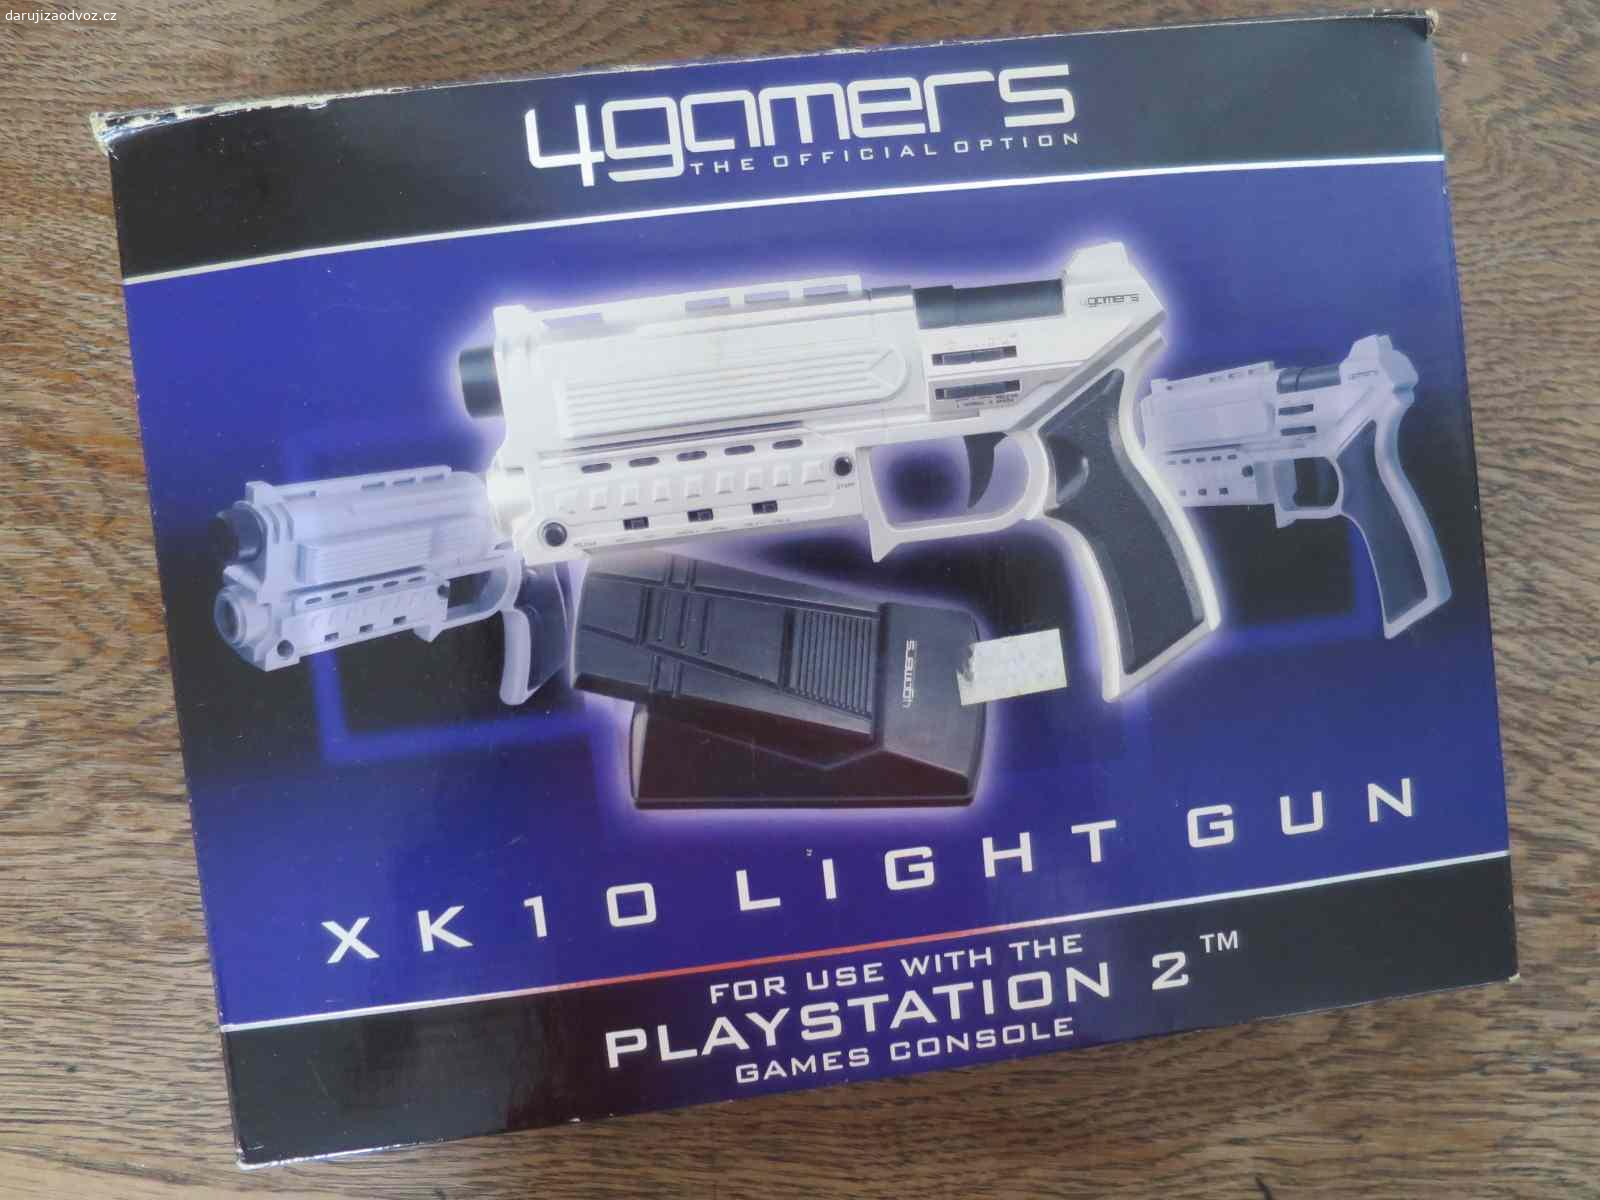 Herní pistole XK10 Light Gun. Herní pistole XK10 Light Gun k Sony PlayStation 2. Nevím, zda je funkční, nemám jak vyzkoušet. Na druhé fotce je veškerý obsah balení.